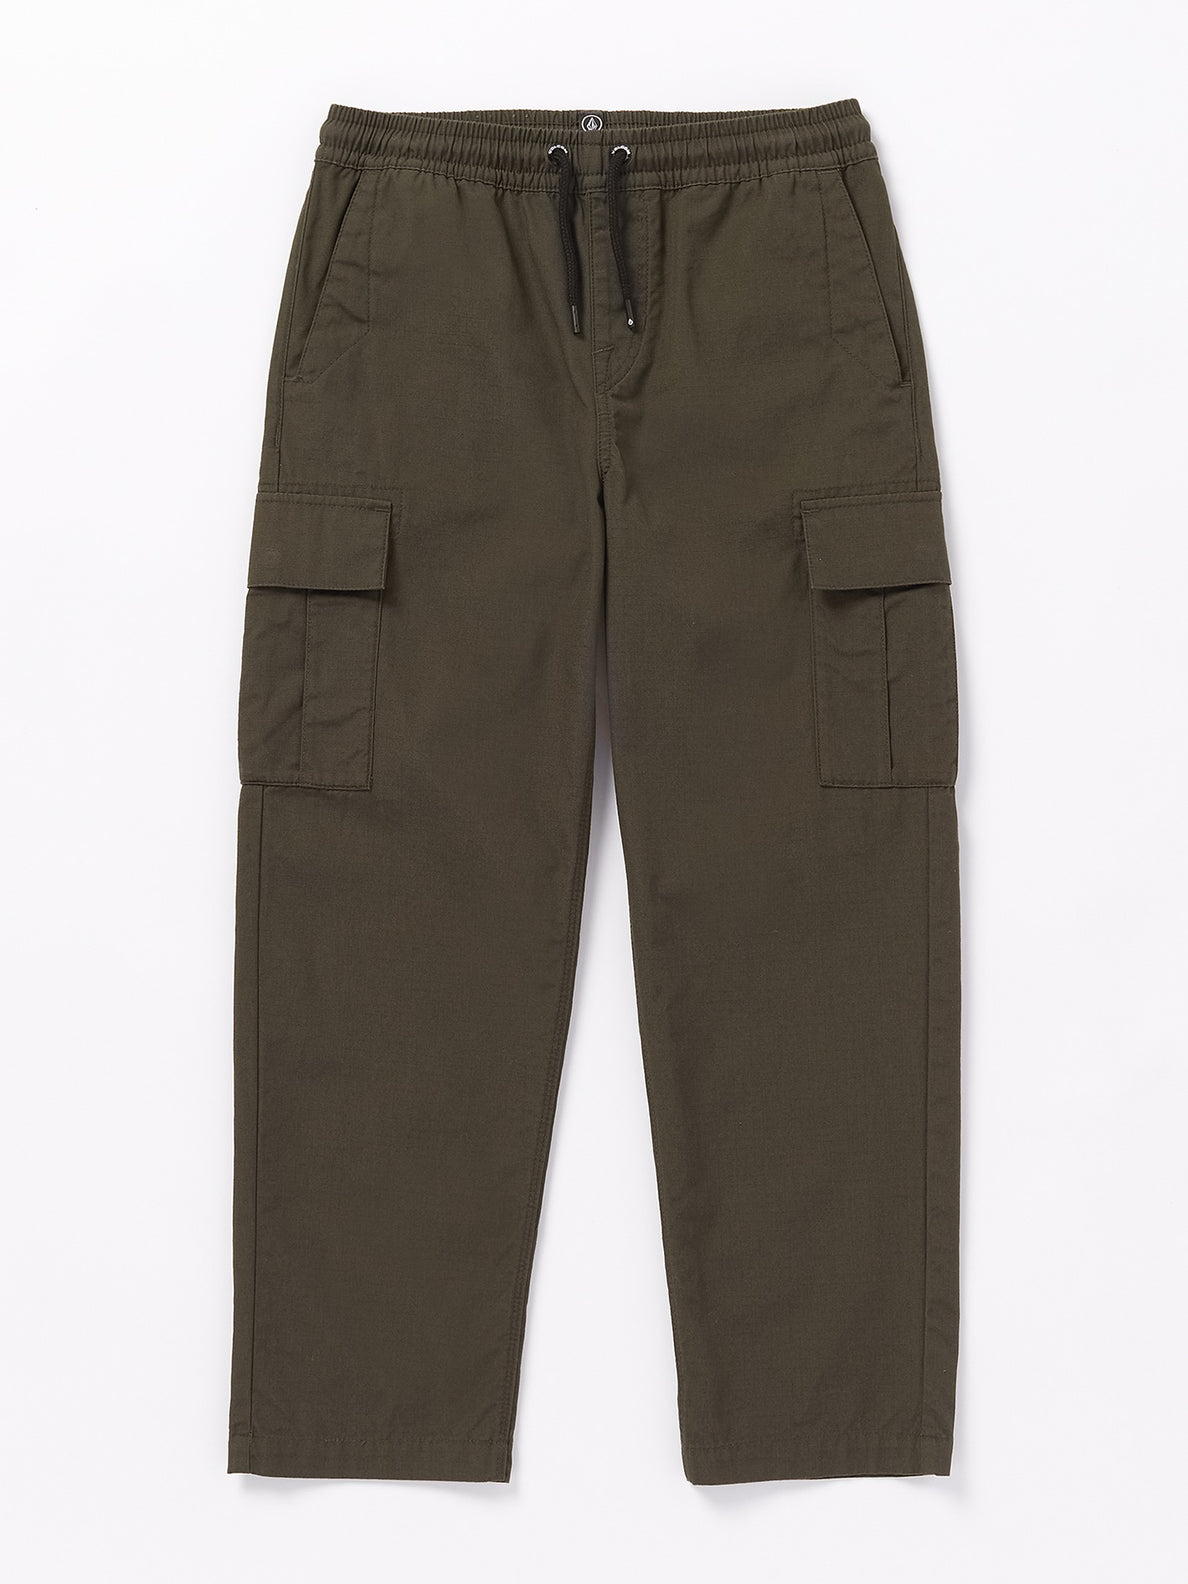 UA Best Buy Scrubs Women's 2-Pocket Elastic Waist Pants - Tall Size XS  Khaki Polyester/Cotton | Buy scrubs, Elastic waist pants, Pants